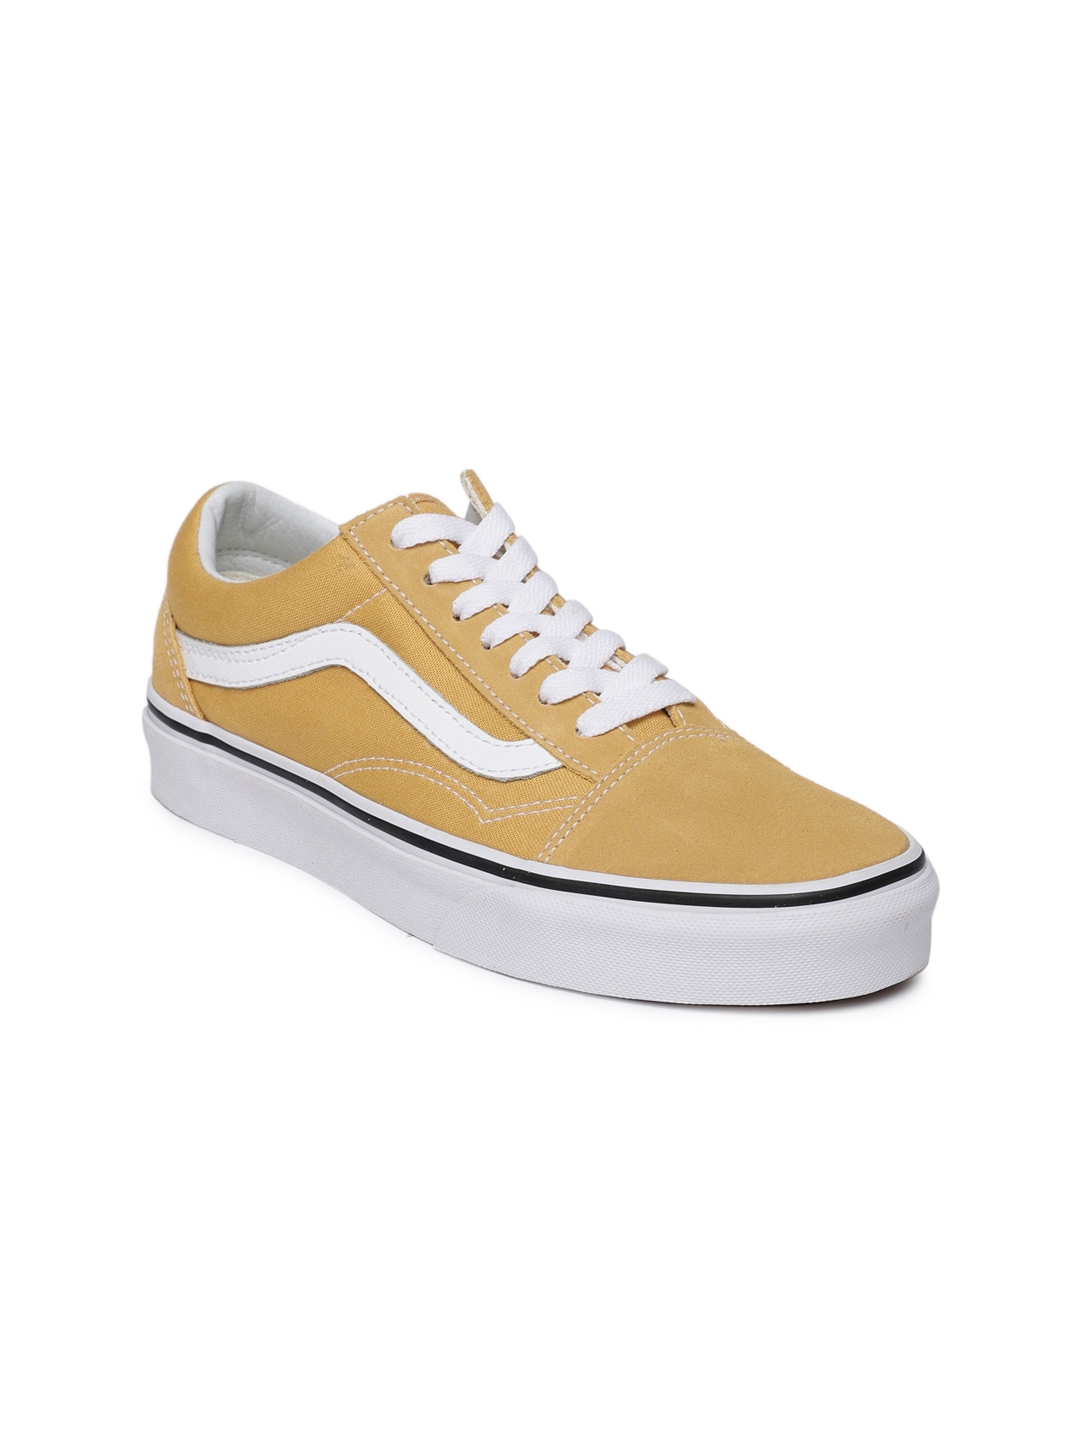 Buy Vans Unisex Yellow Old Skool - Shoes 4296010 | Myntra